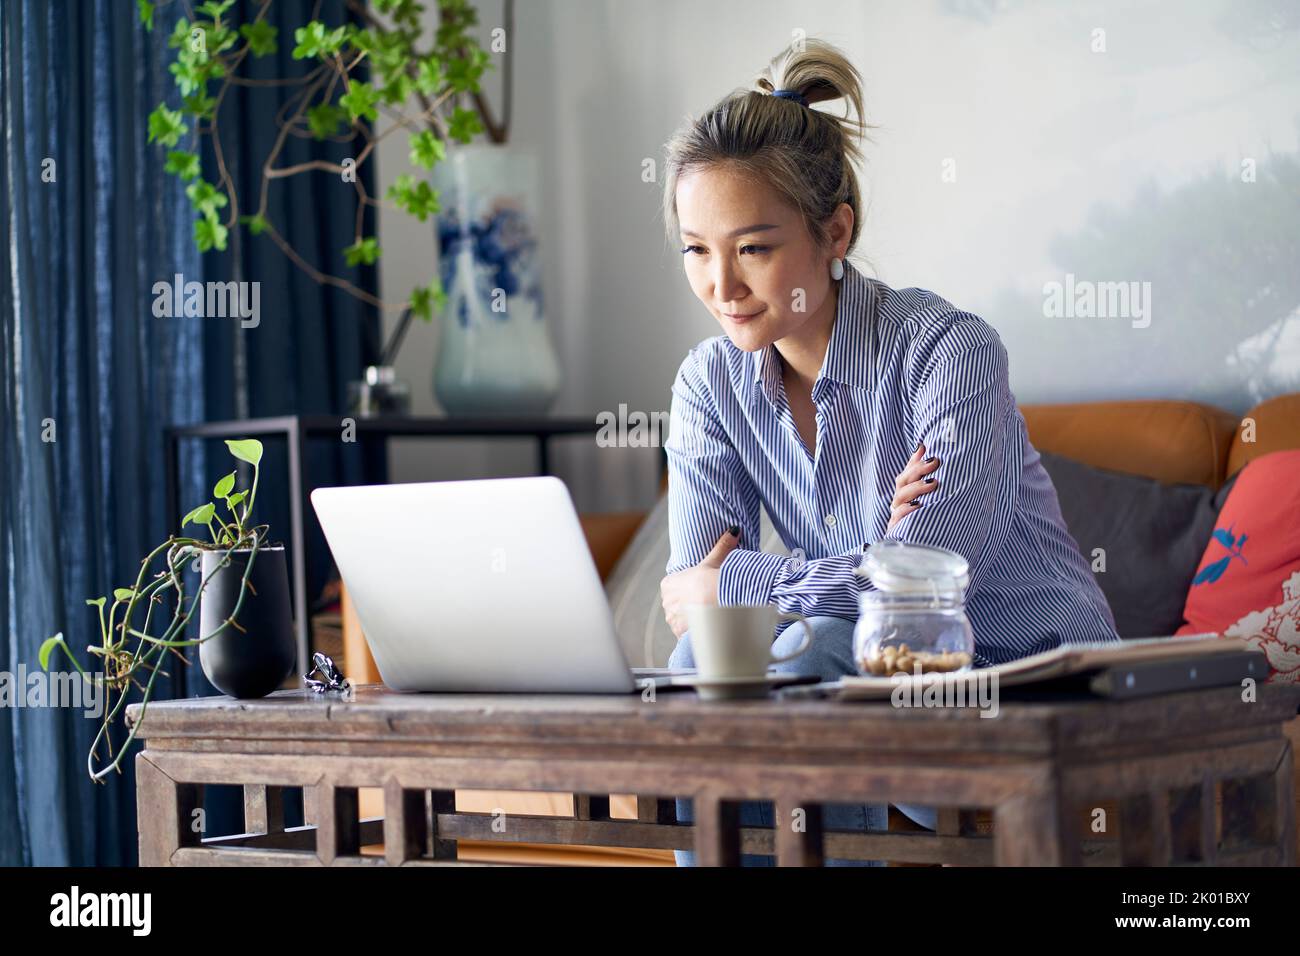 mujer asiática profesional madura que trabaja desde casa sentada en el sofá mirando el ordenador portátil Foto de stock